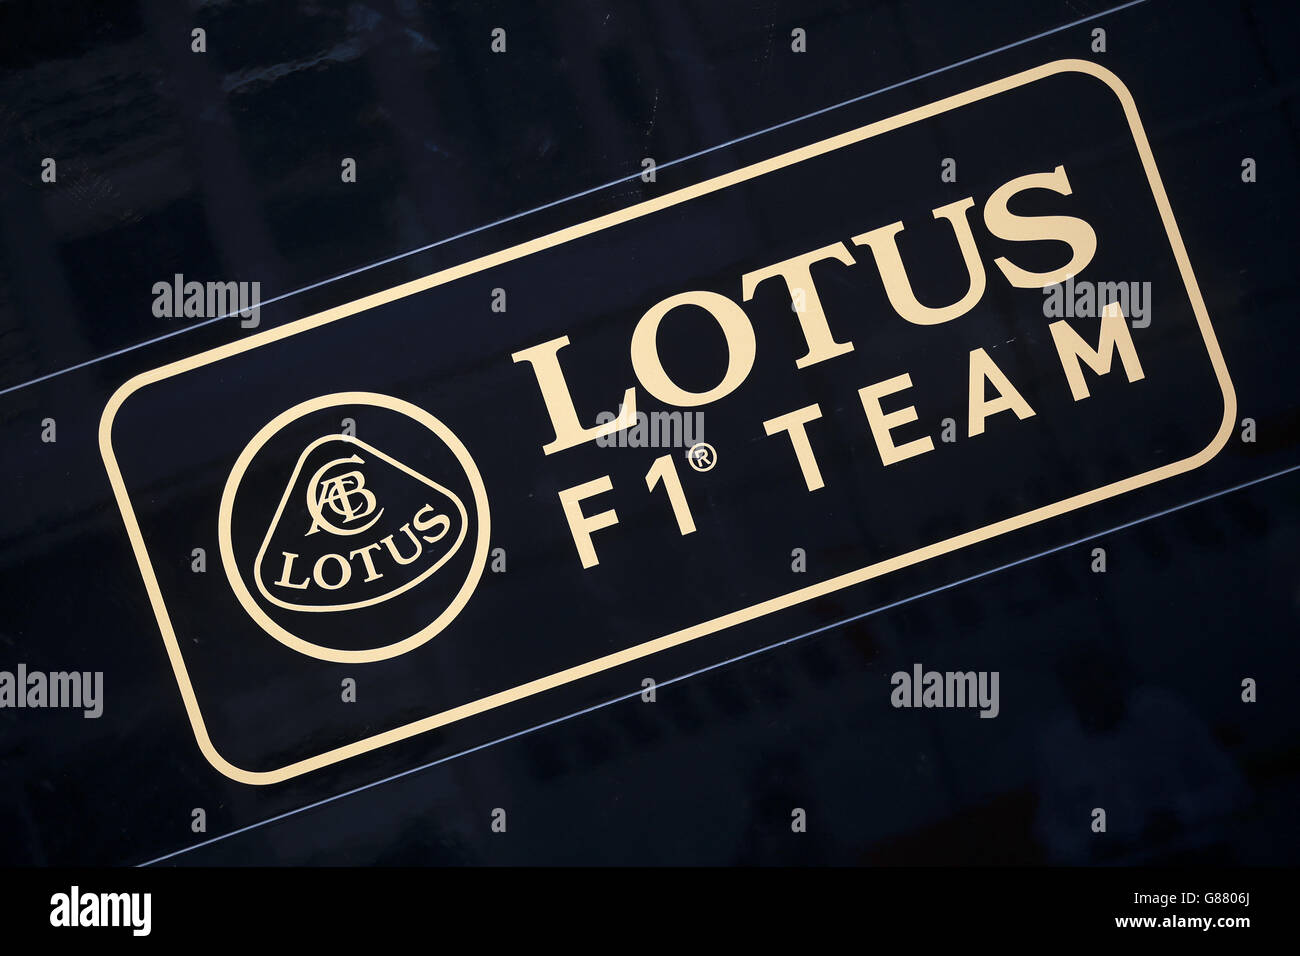 lotus f1 logo